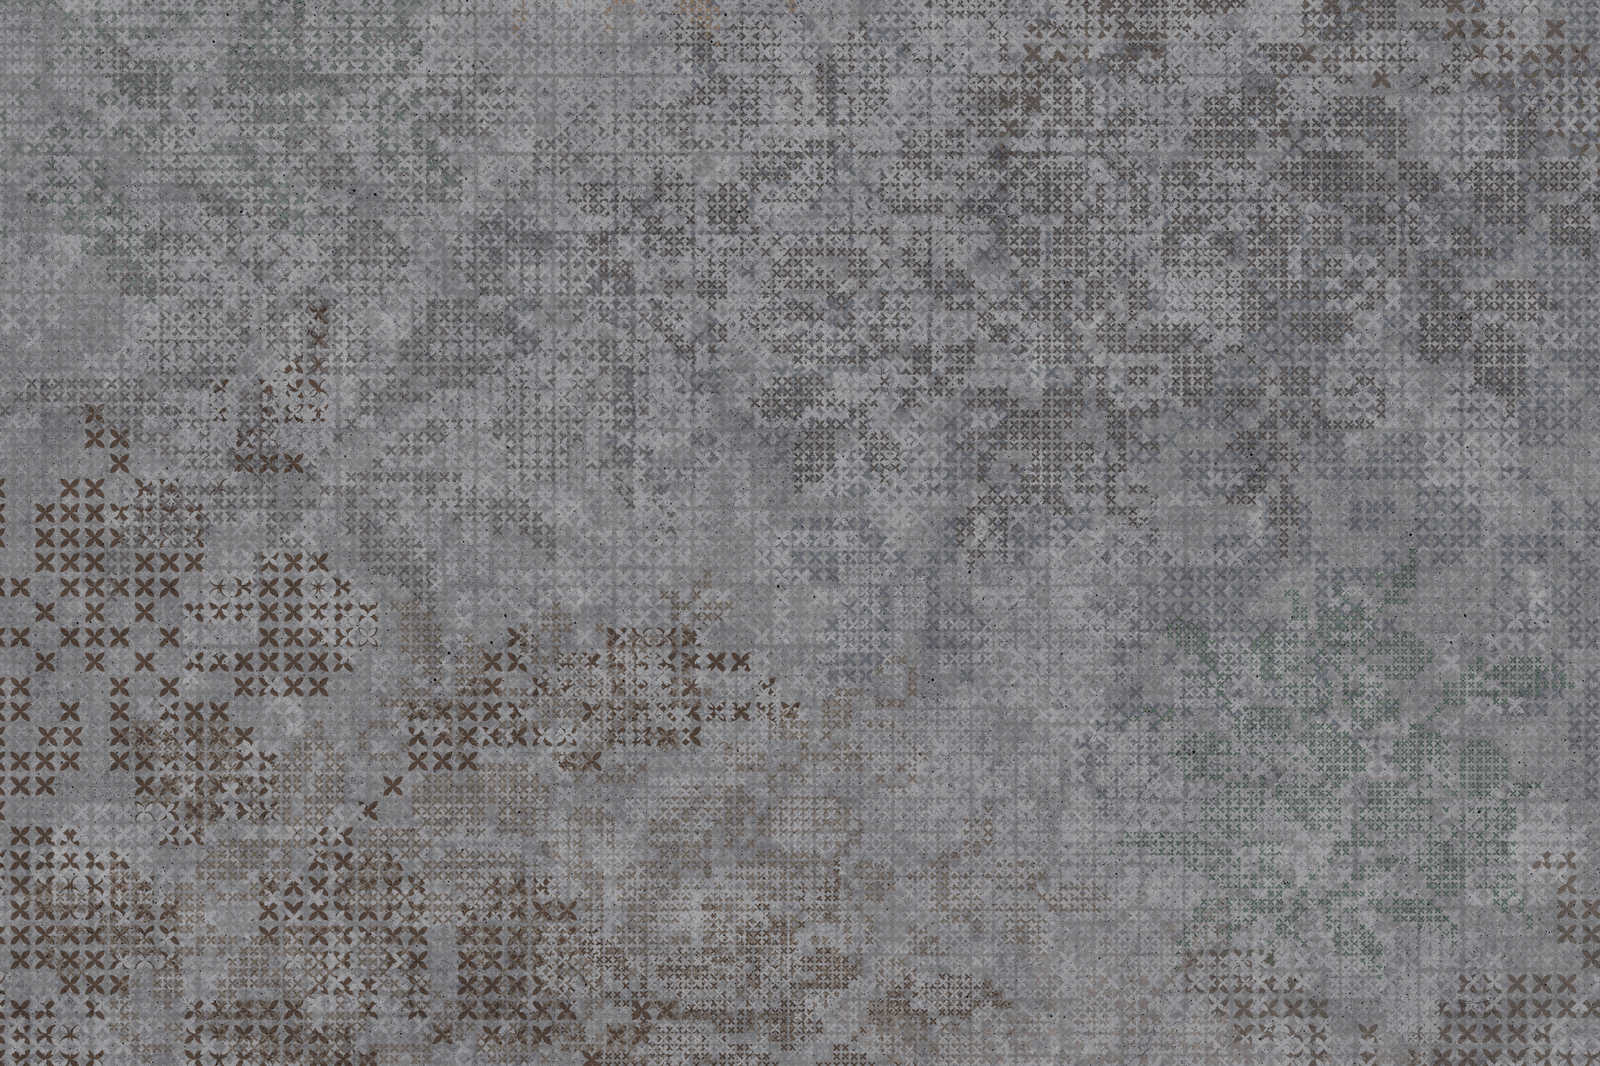             Toile Croix Motif style pixel - 0,90 m x 0,60 m
        